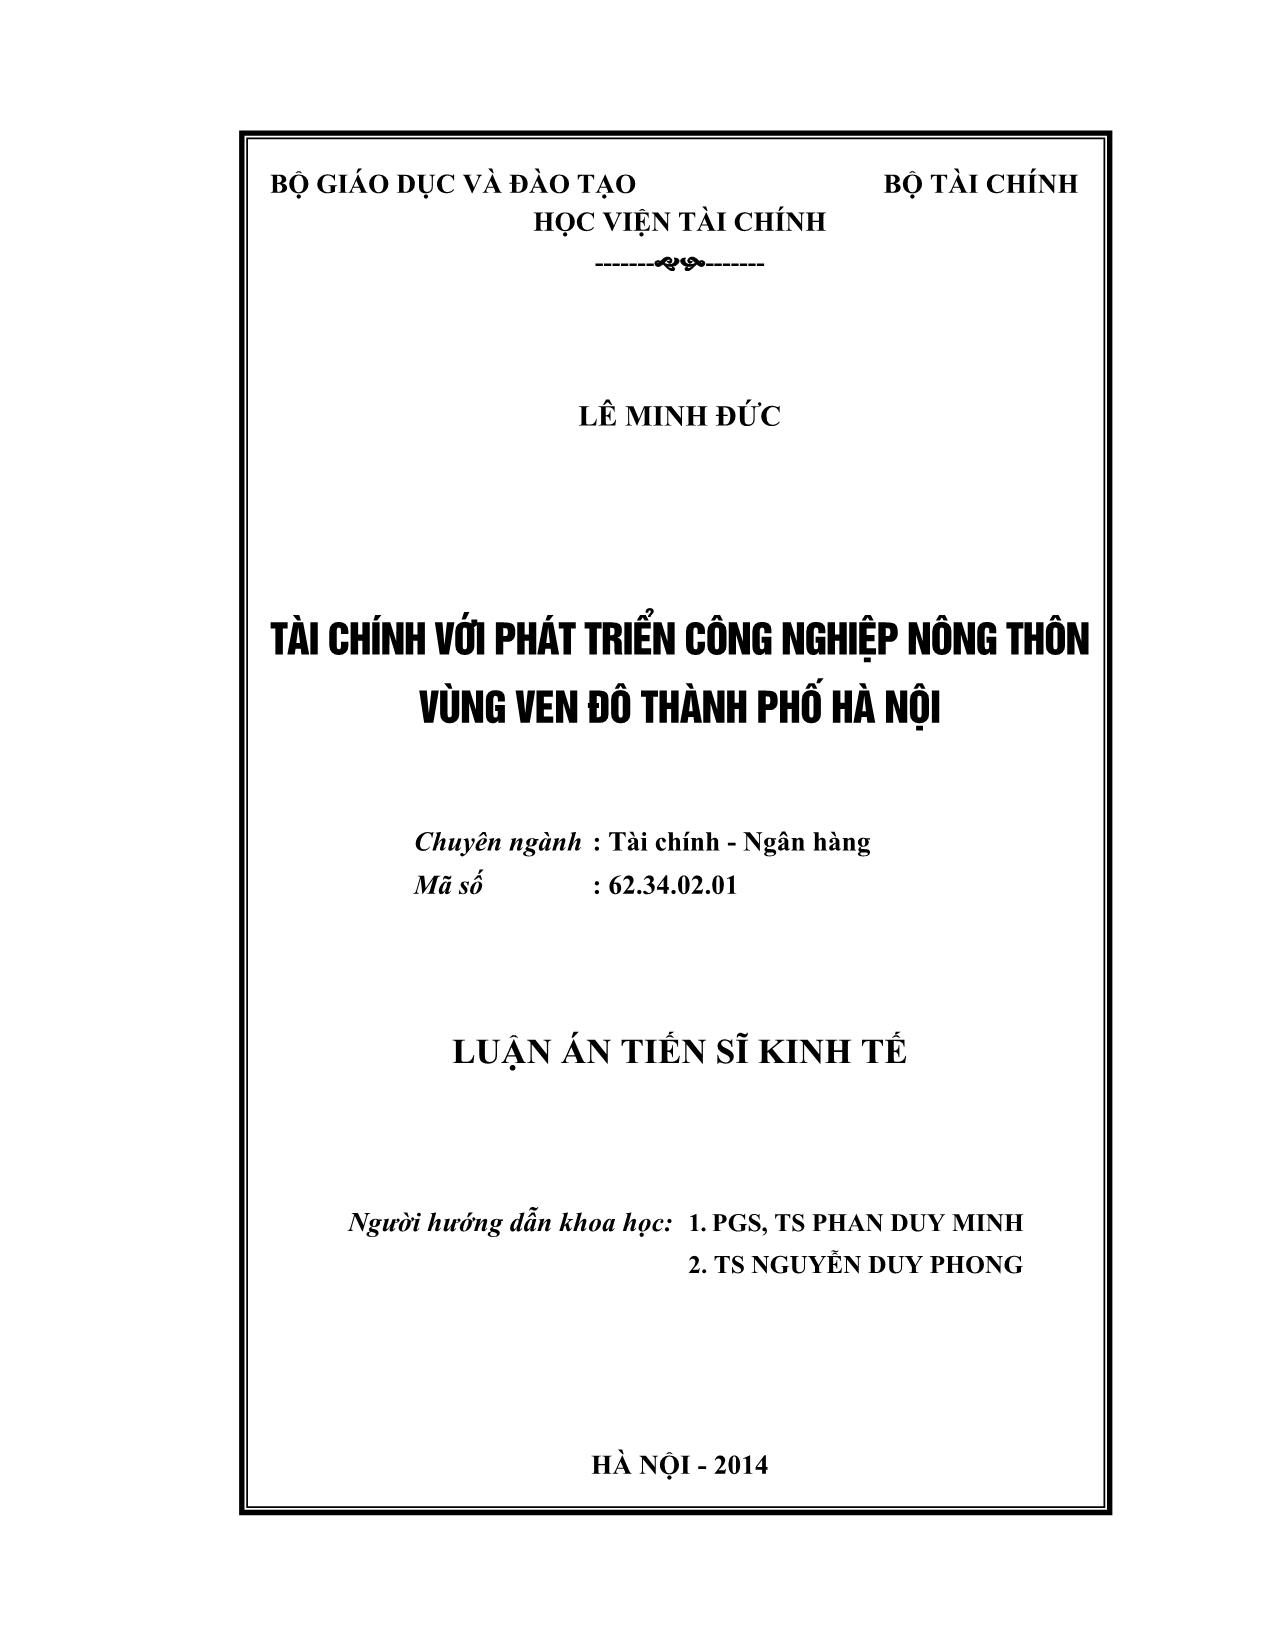 Luận án Tài chính với phát triển công nghiệp nông thôn vùng ven đô Thành phố Hà Nội trang 2